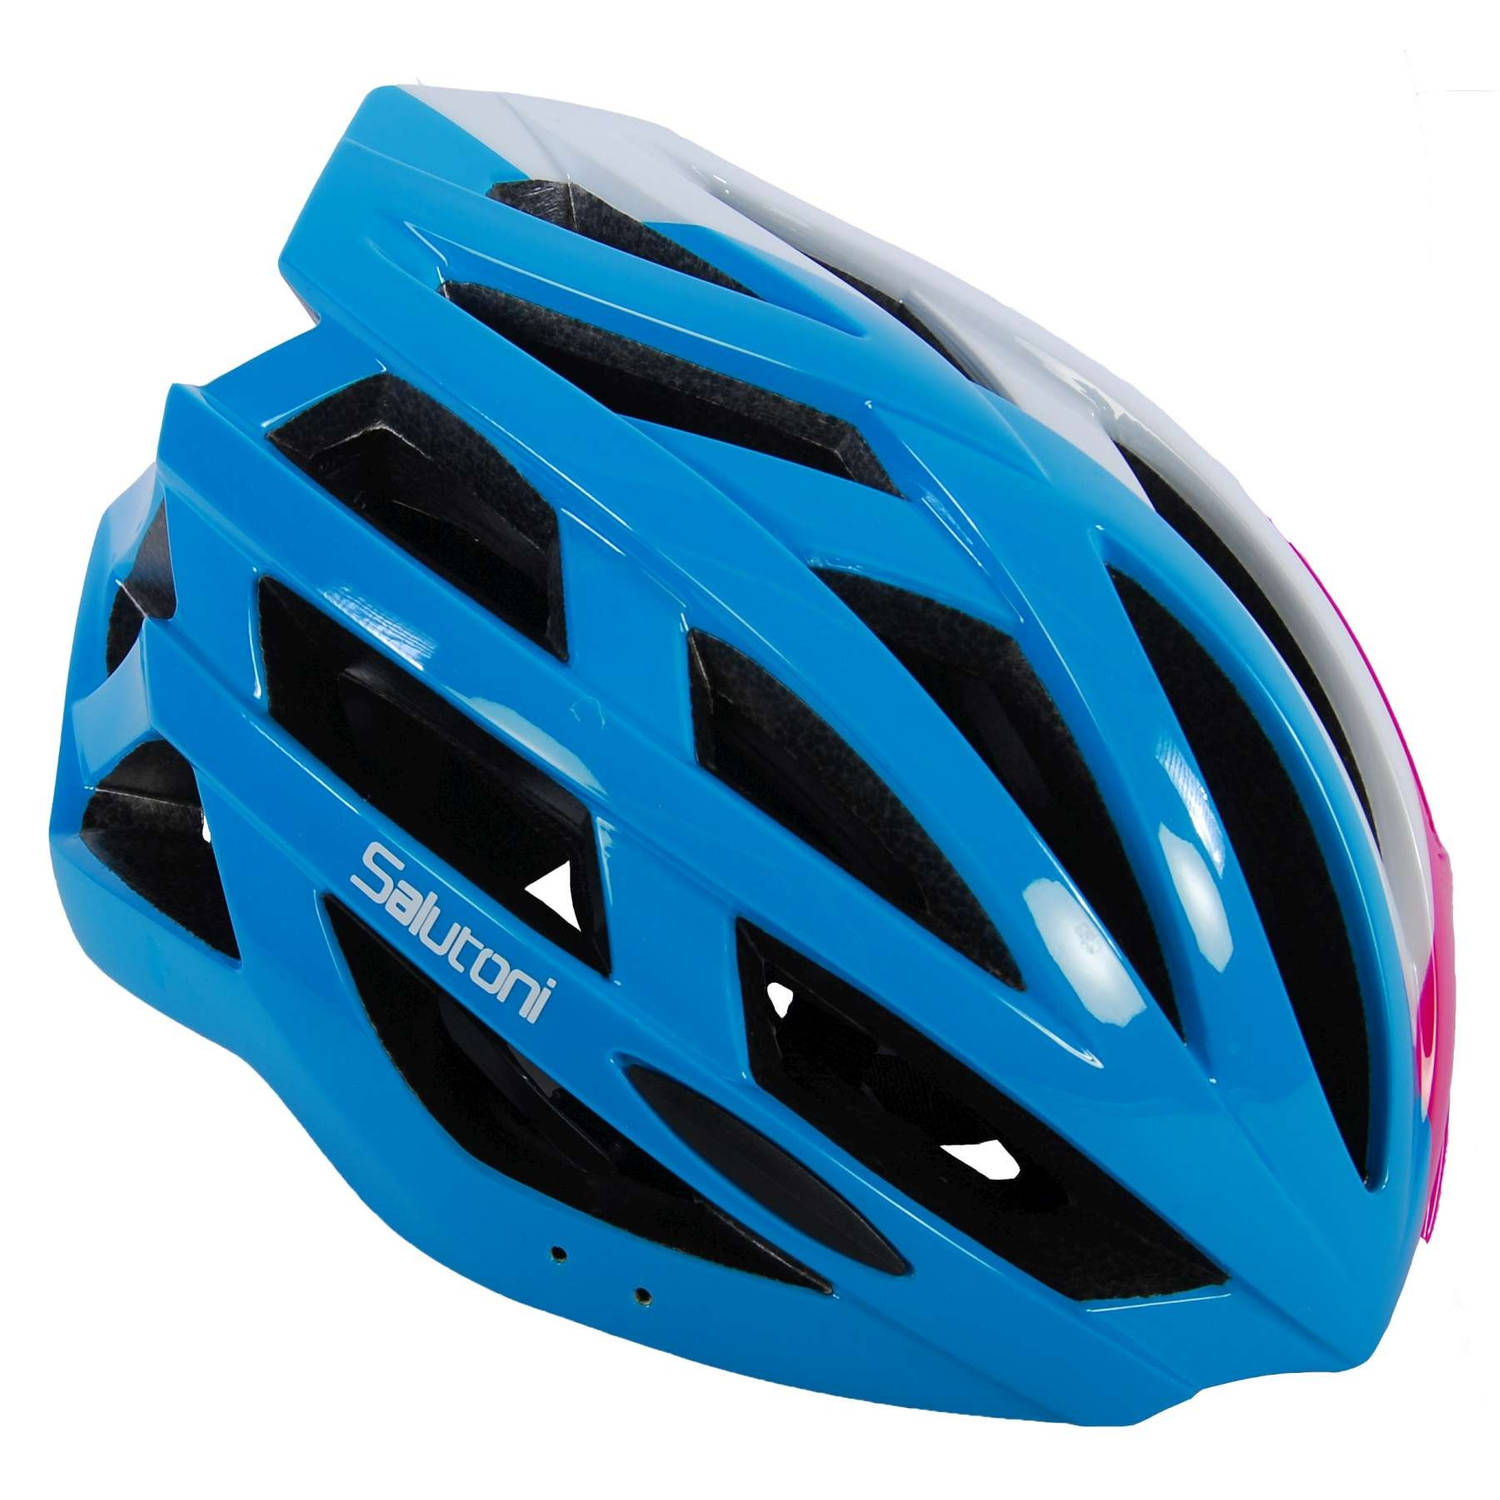 Beperken ik klaag Beroep Salutoni fietshelm dames blauw/wit/roze 58-61 cm | Blokker